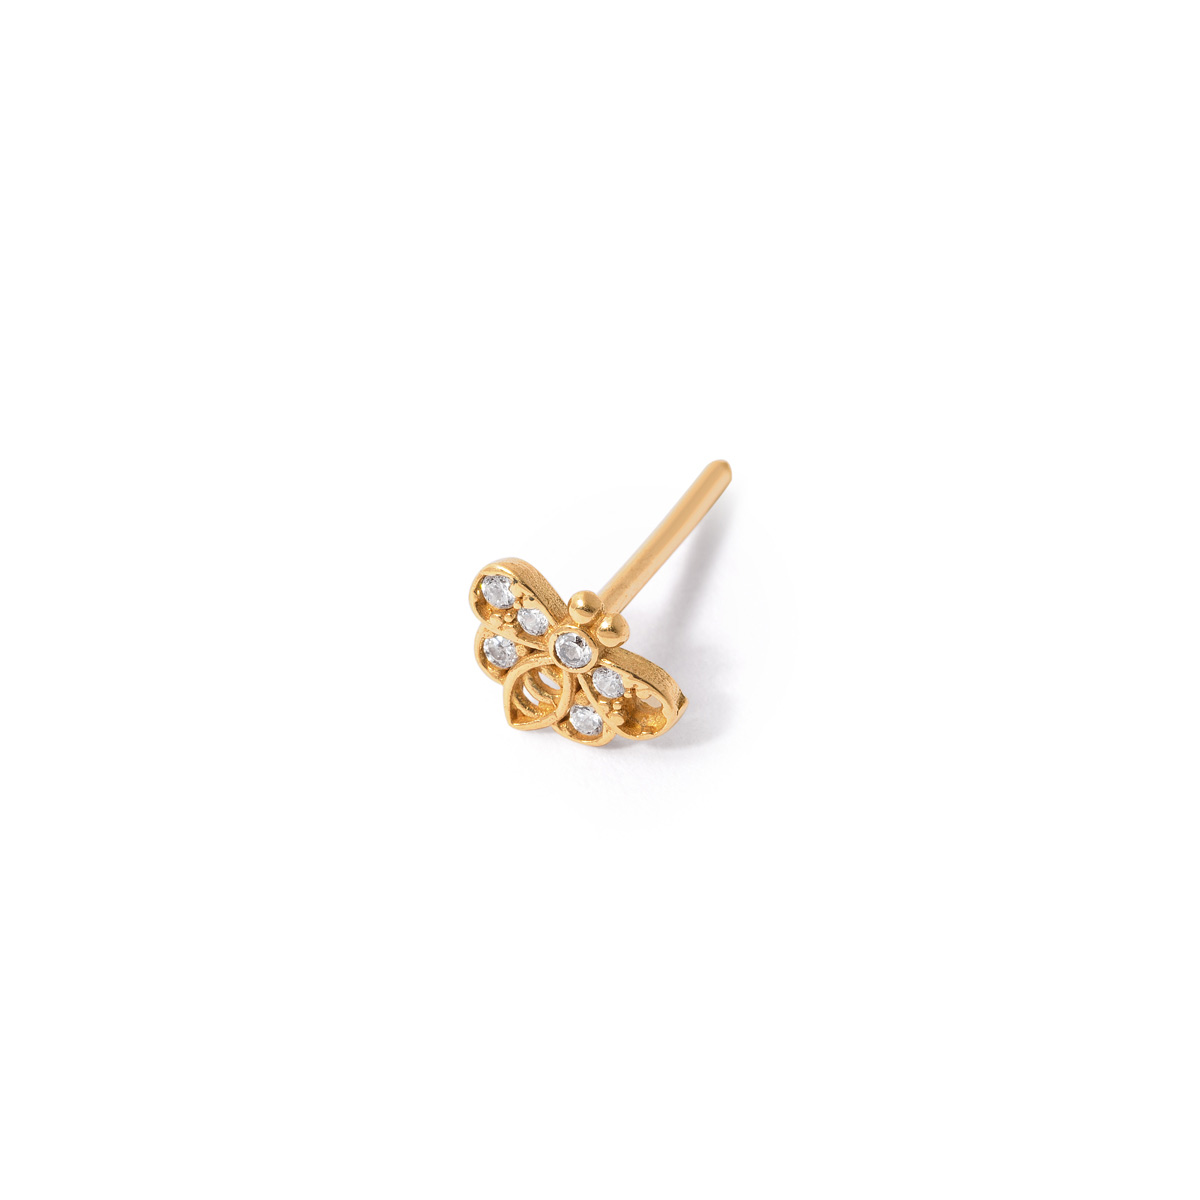 Gold single bee earring g